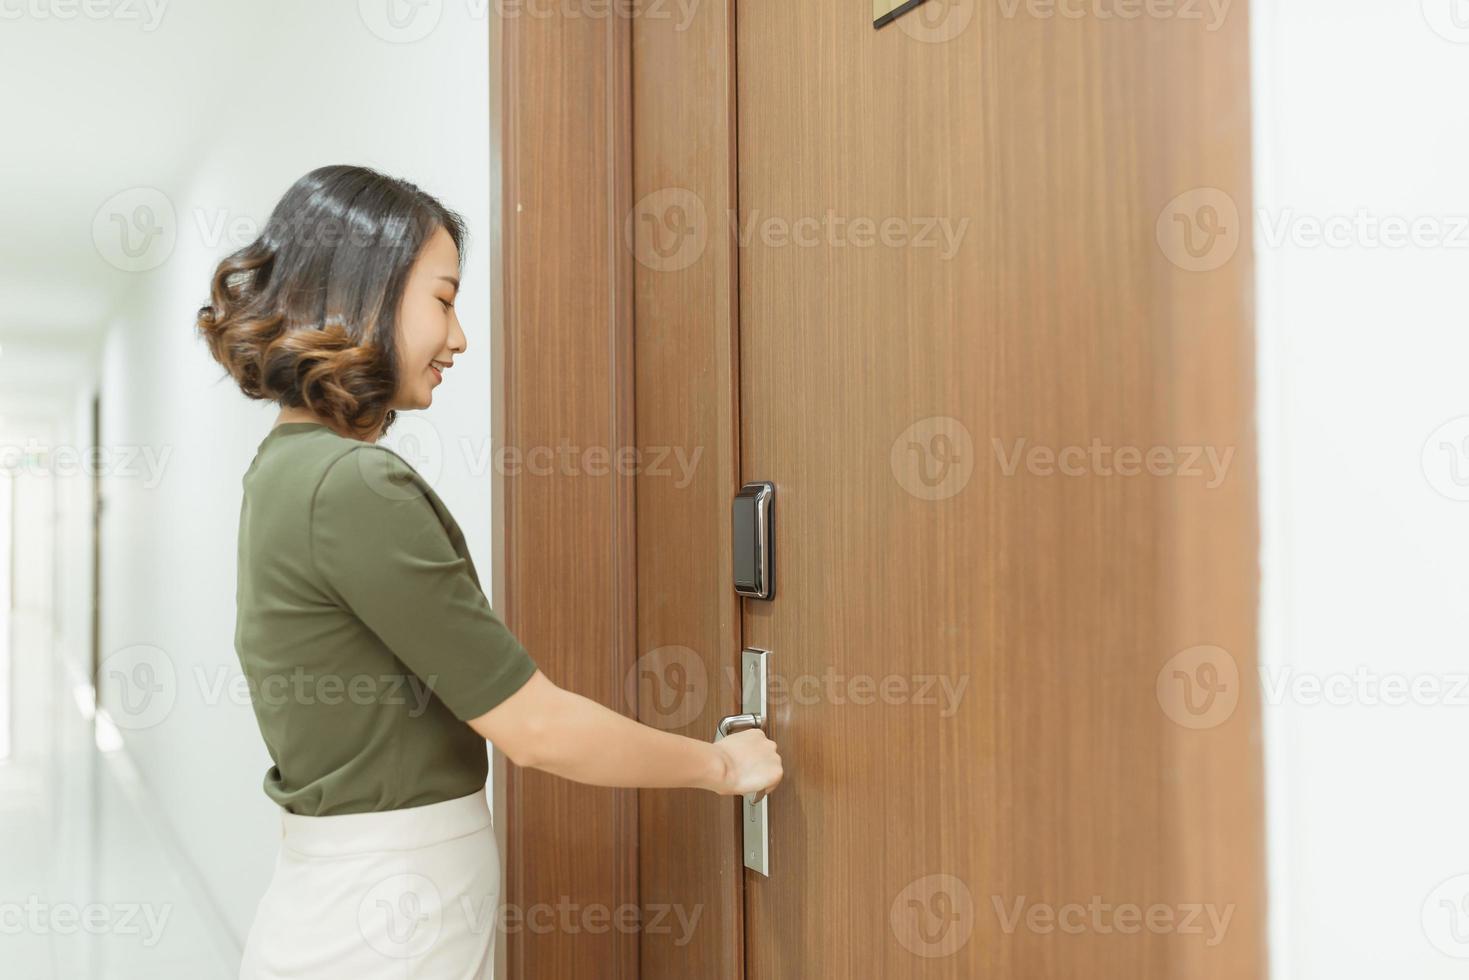 vrouw opent deur van appartement foto